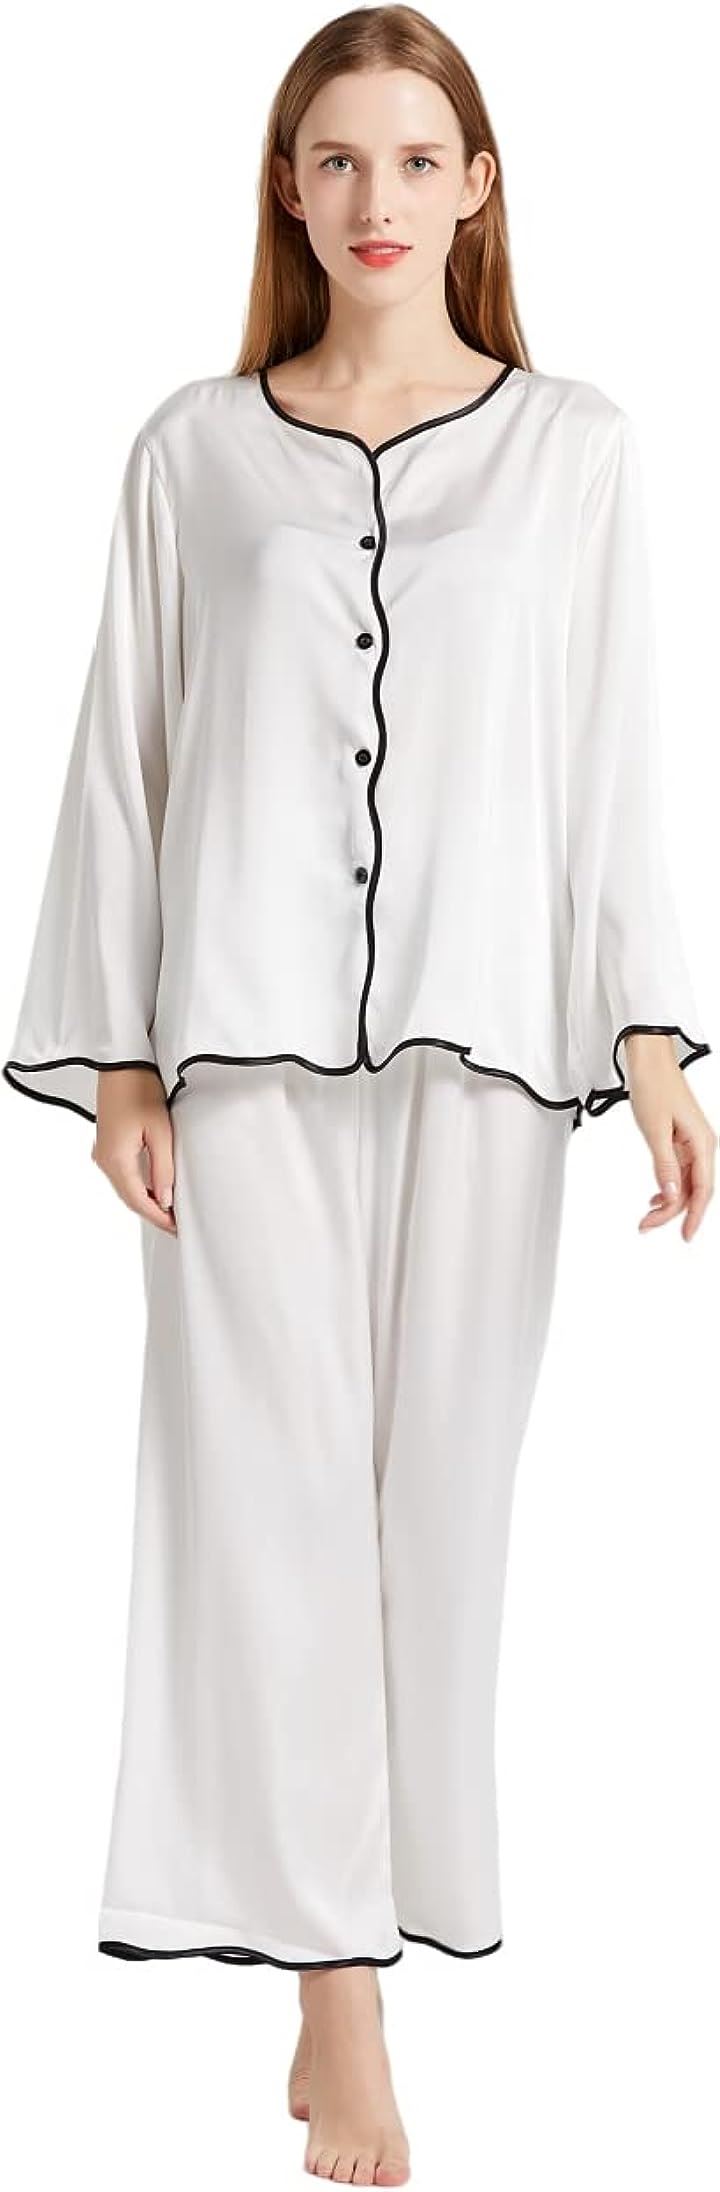 母の日 レディース パジャマ シルク サテン 上下セット ルームウェア 部屋着 長袖 MDM( ホワイト, XL)